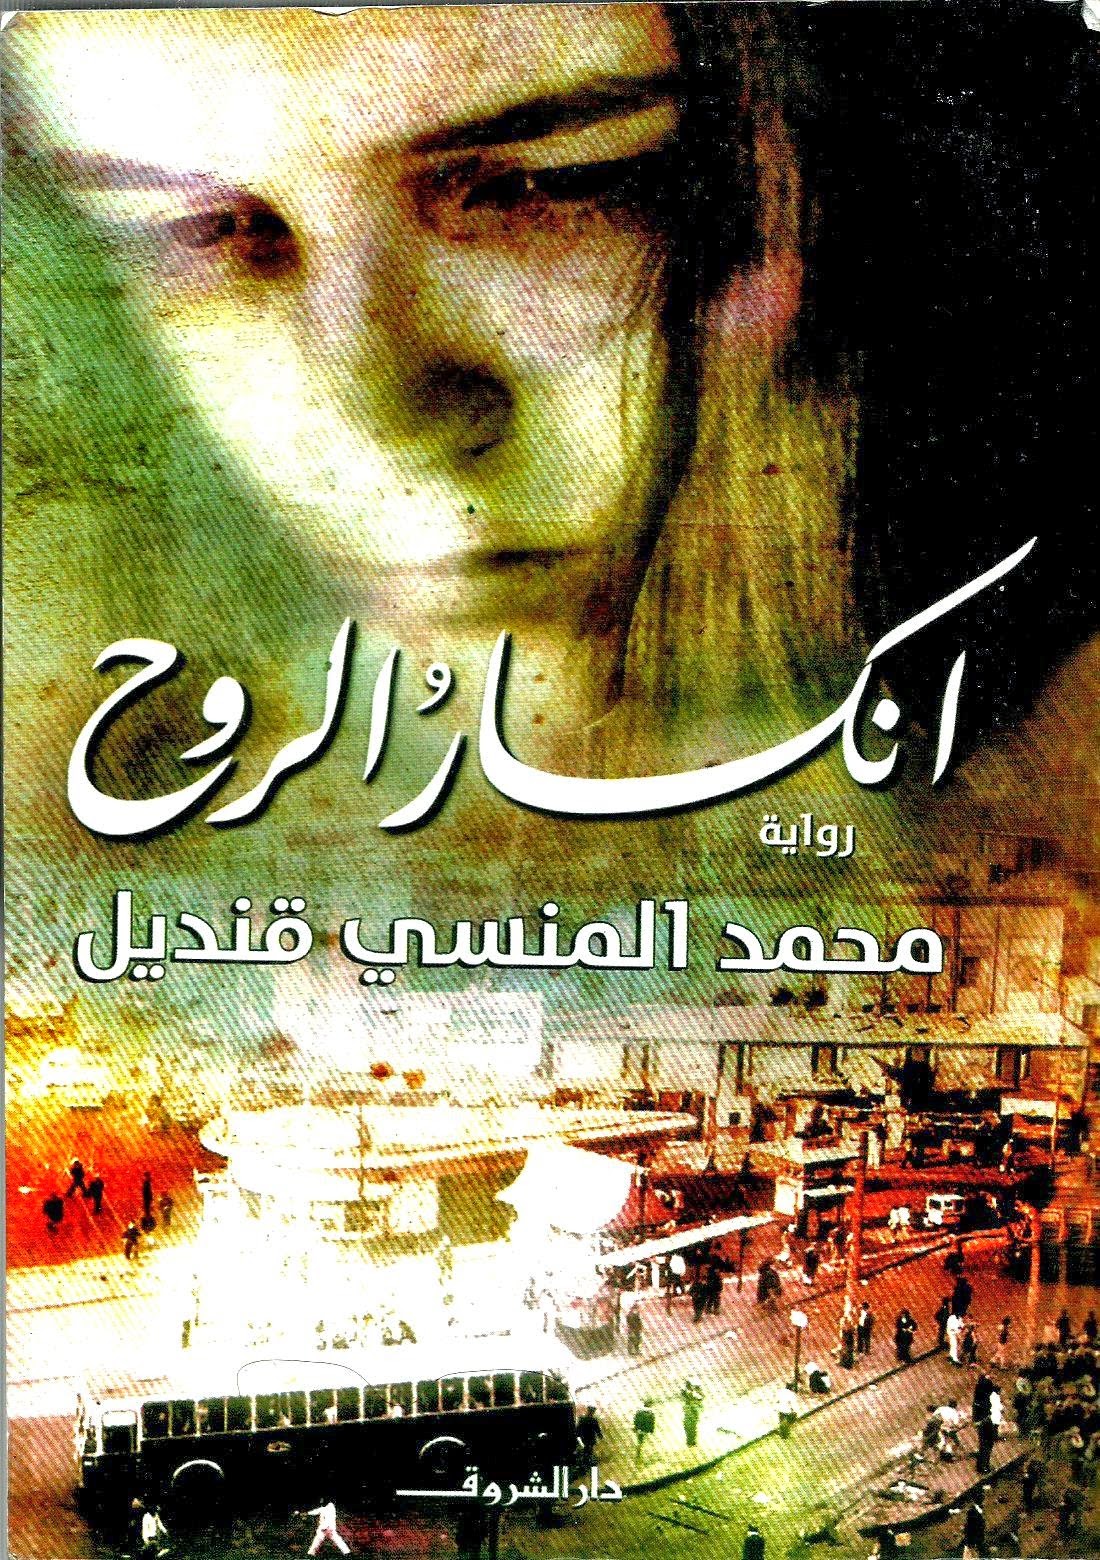 1045 2 روايات رومانسية مصرية - تعرف عن الحب على الطريقة المصريه احلام حواء